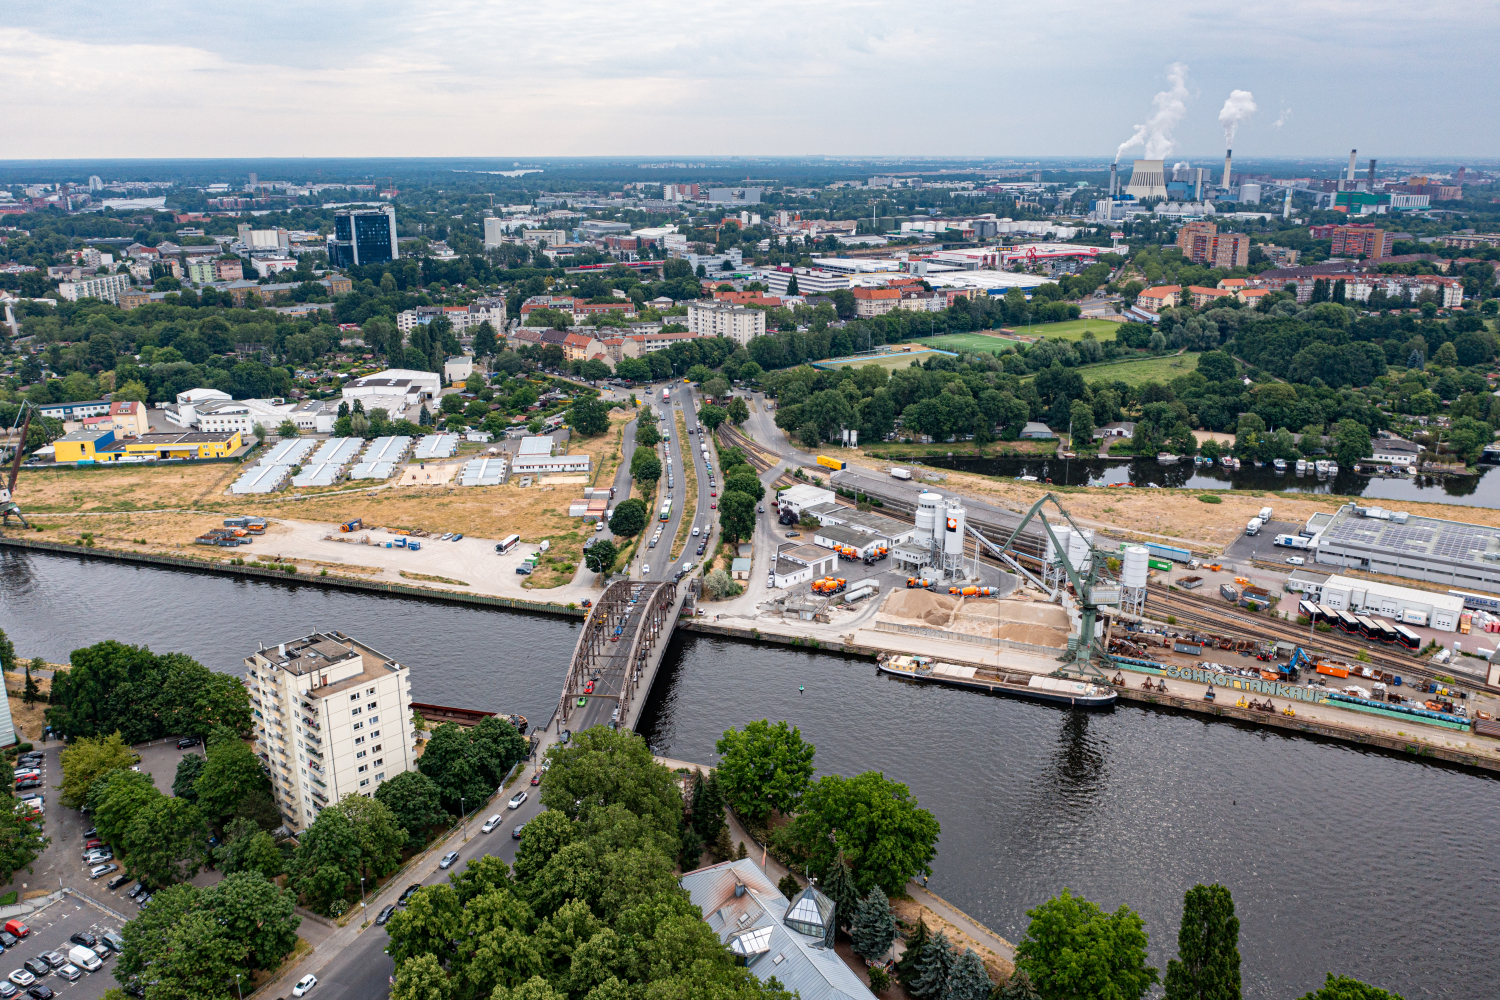 Luftbildaufnahme des Kreuzungsbereiches östlich der Schulenburgbrücke, Brücke, Havel und Oberhafen sind zu sehen.